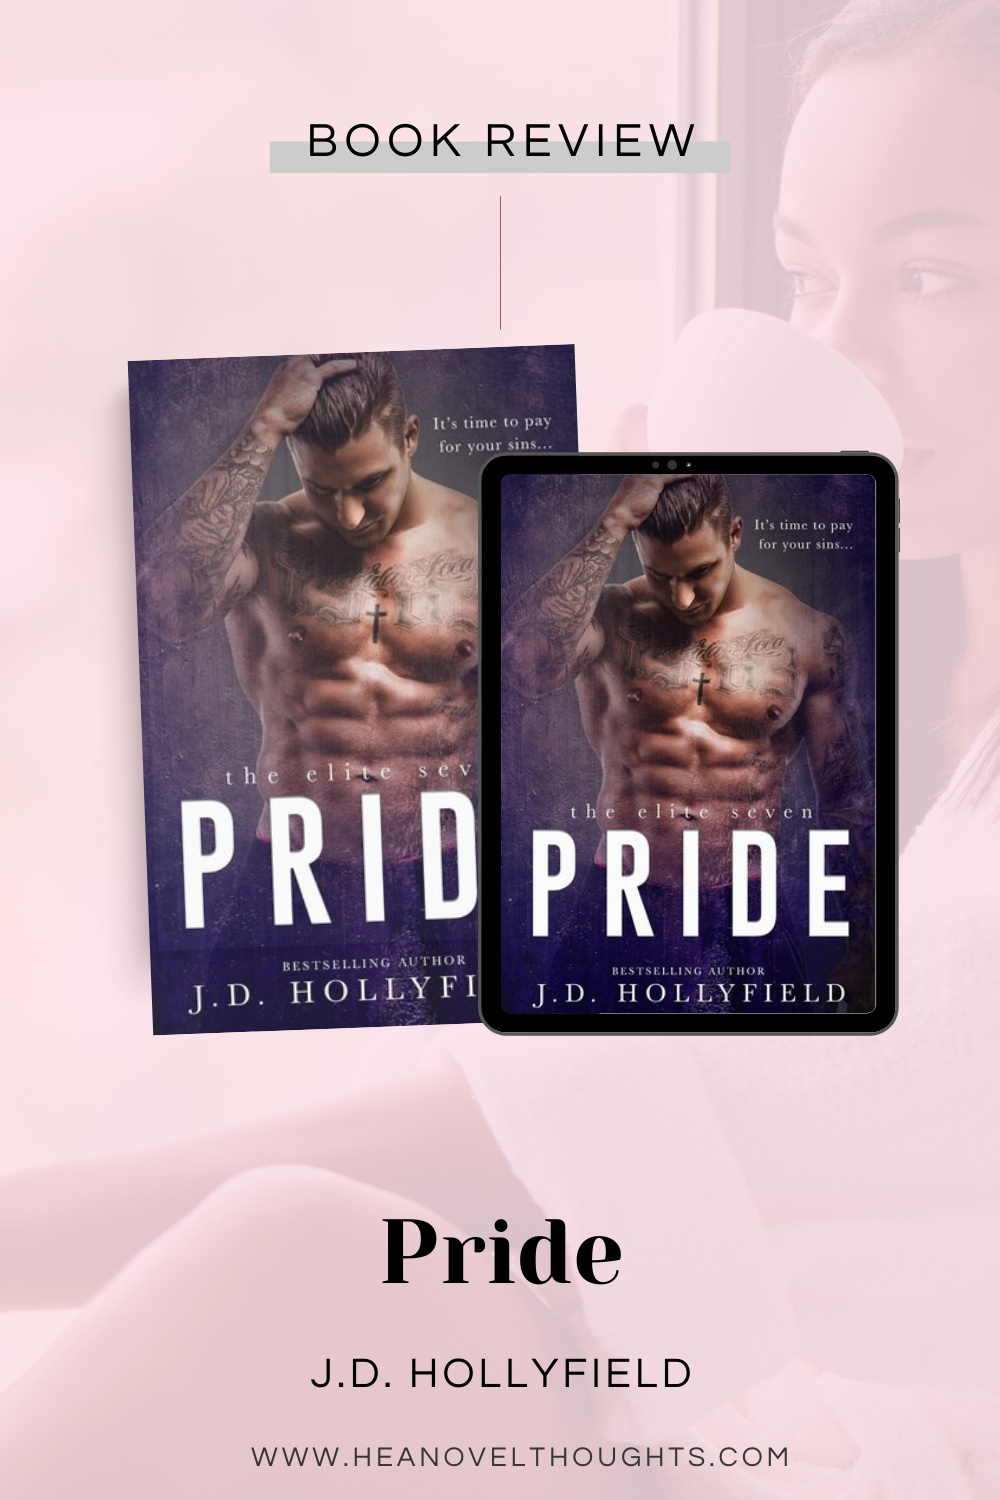 Pride by J.D. Hollyfield